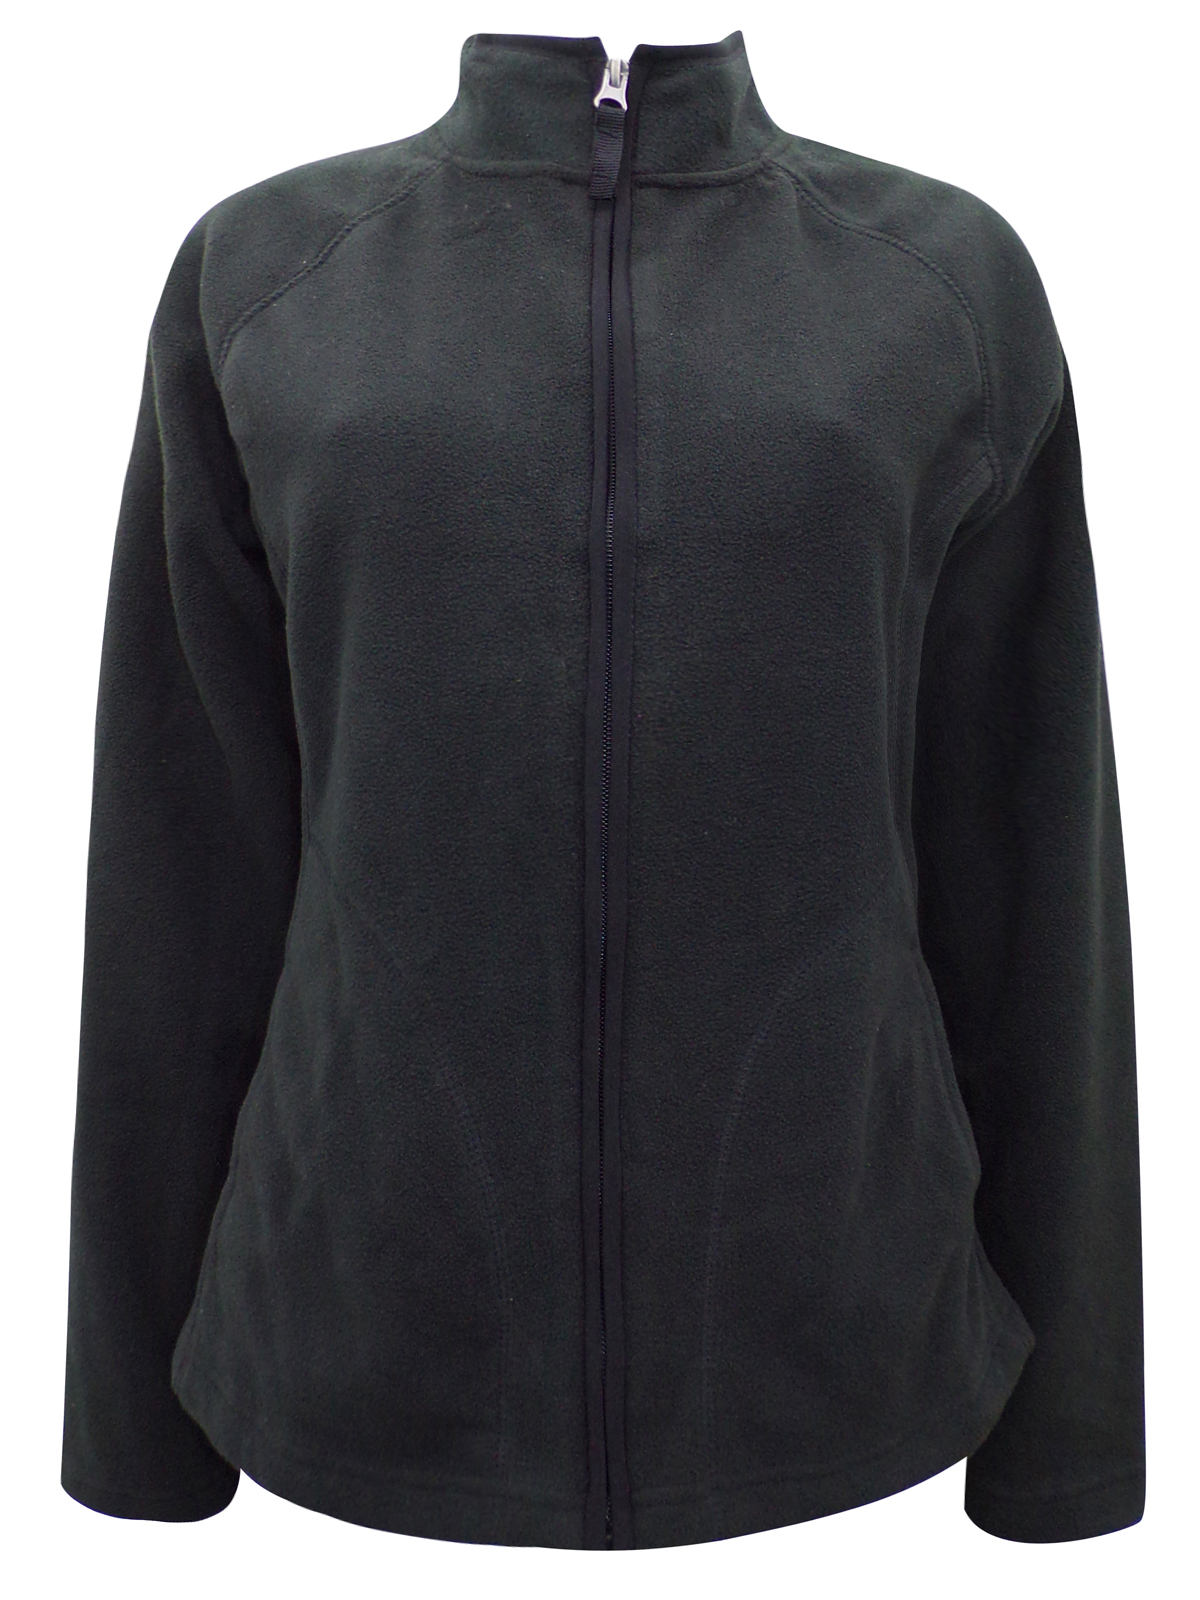 Merona - - Merona BLACK Zip Through Fleece Jacket - Size XSmall to XXLarge